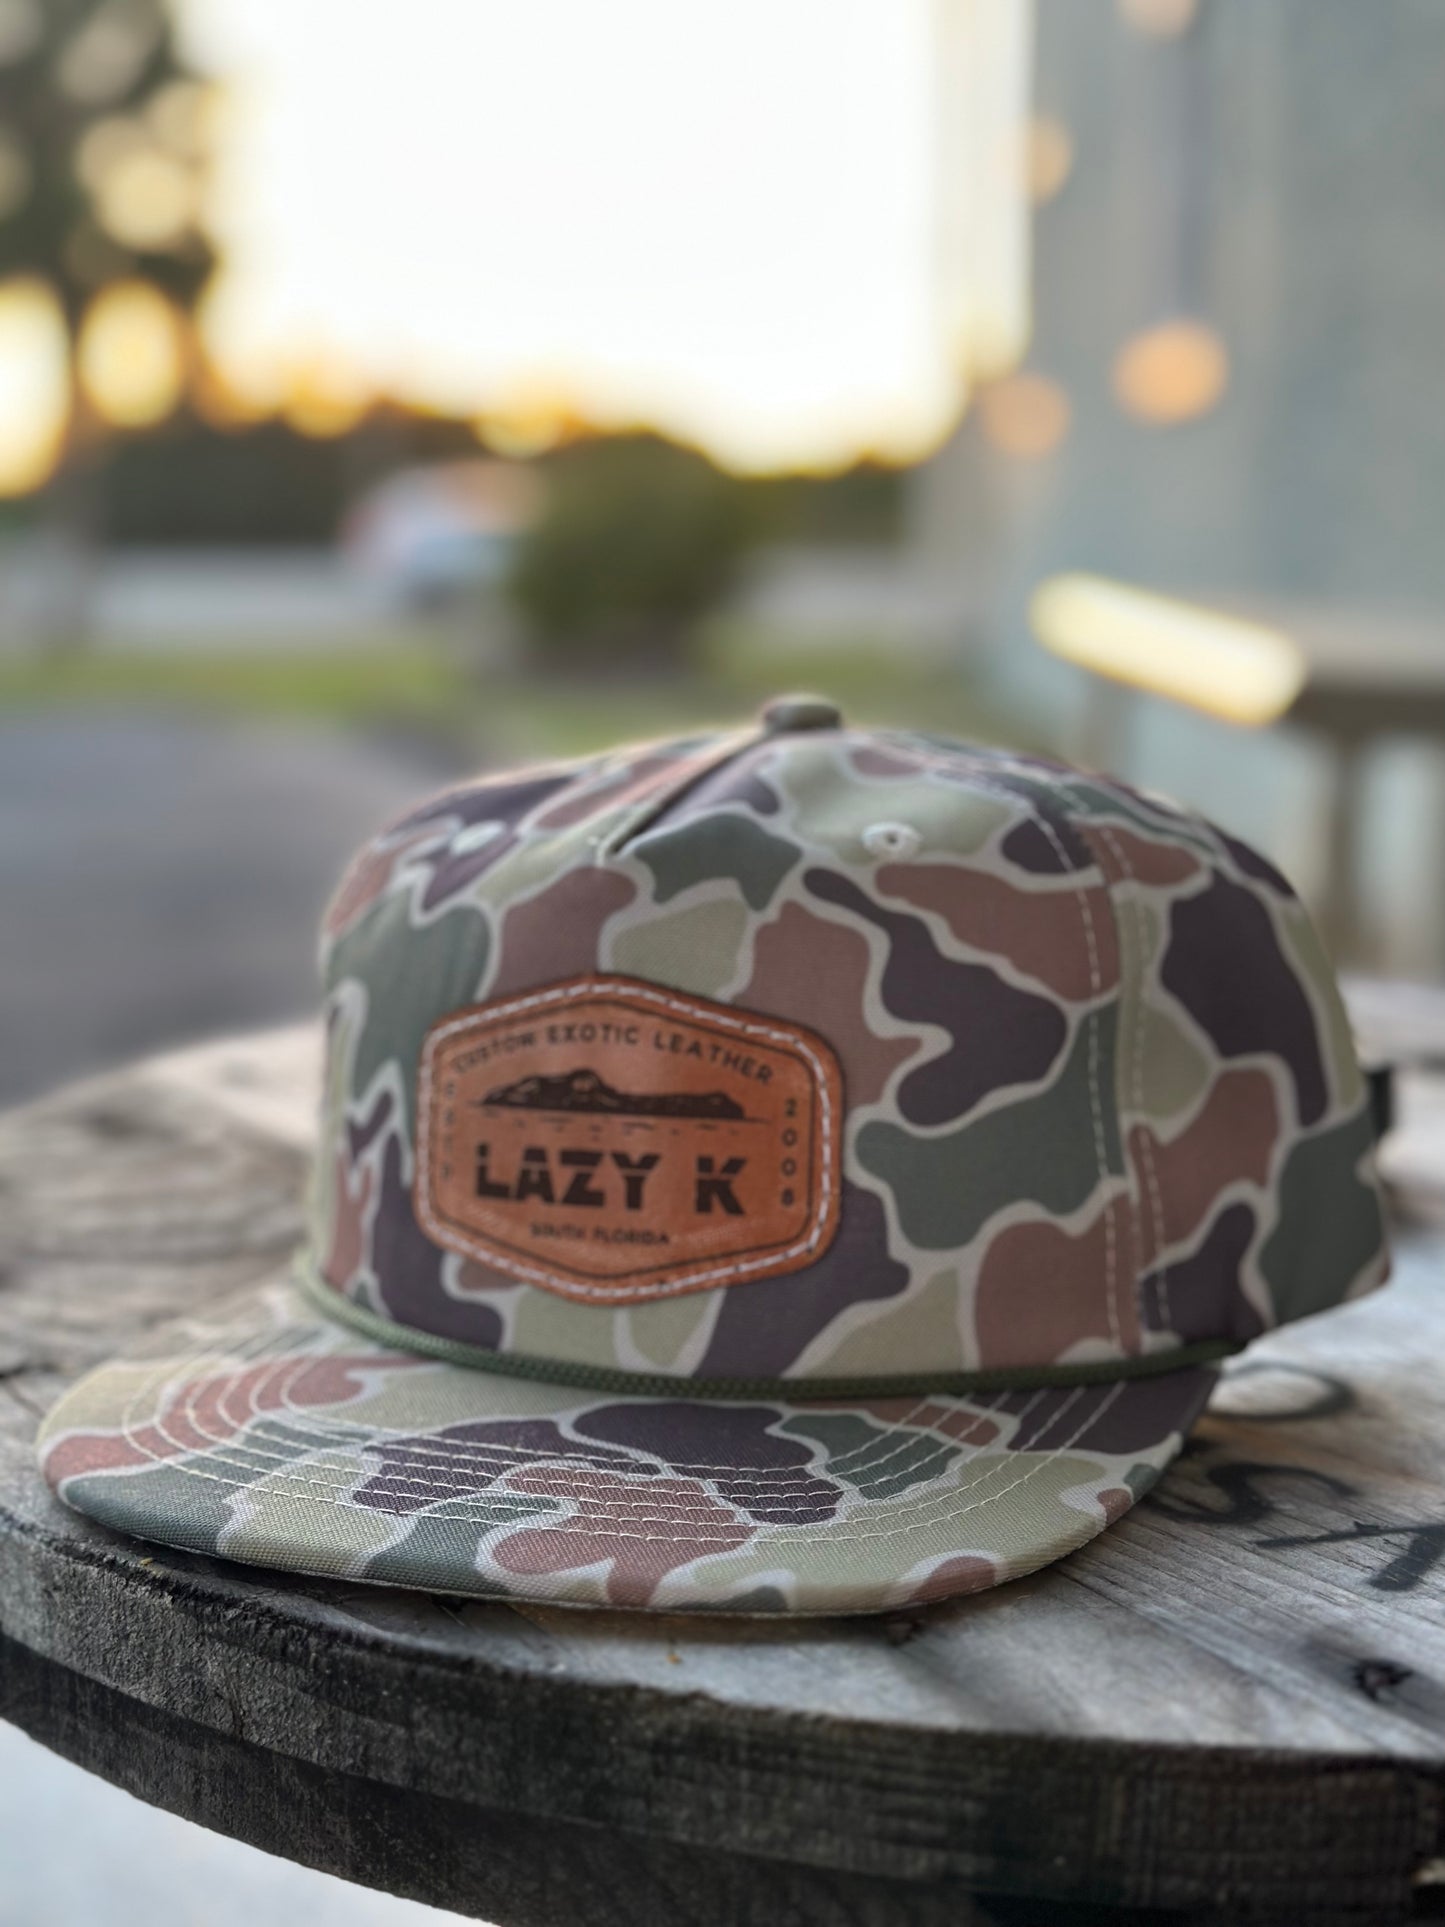 “Lazy k” alligator logo hat